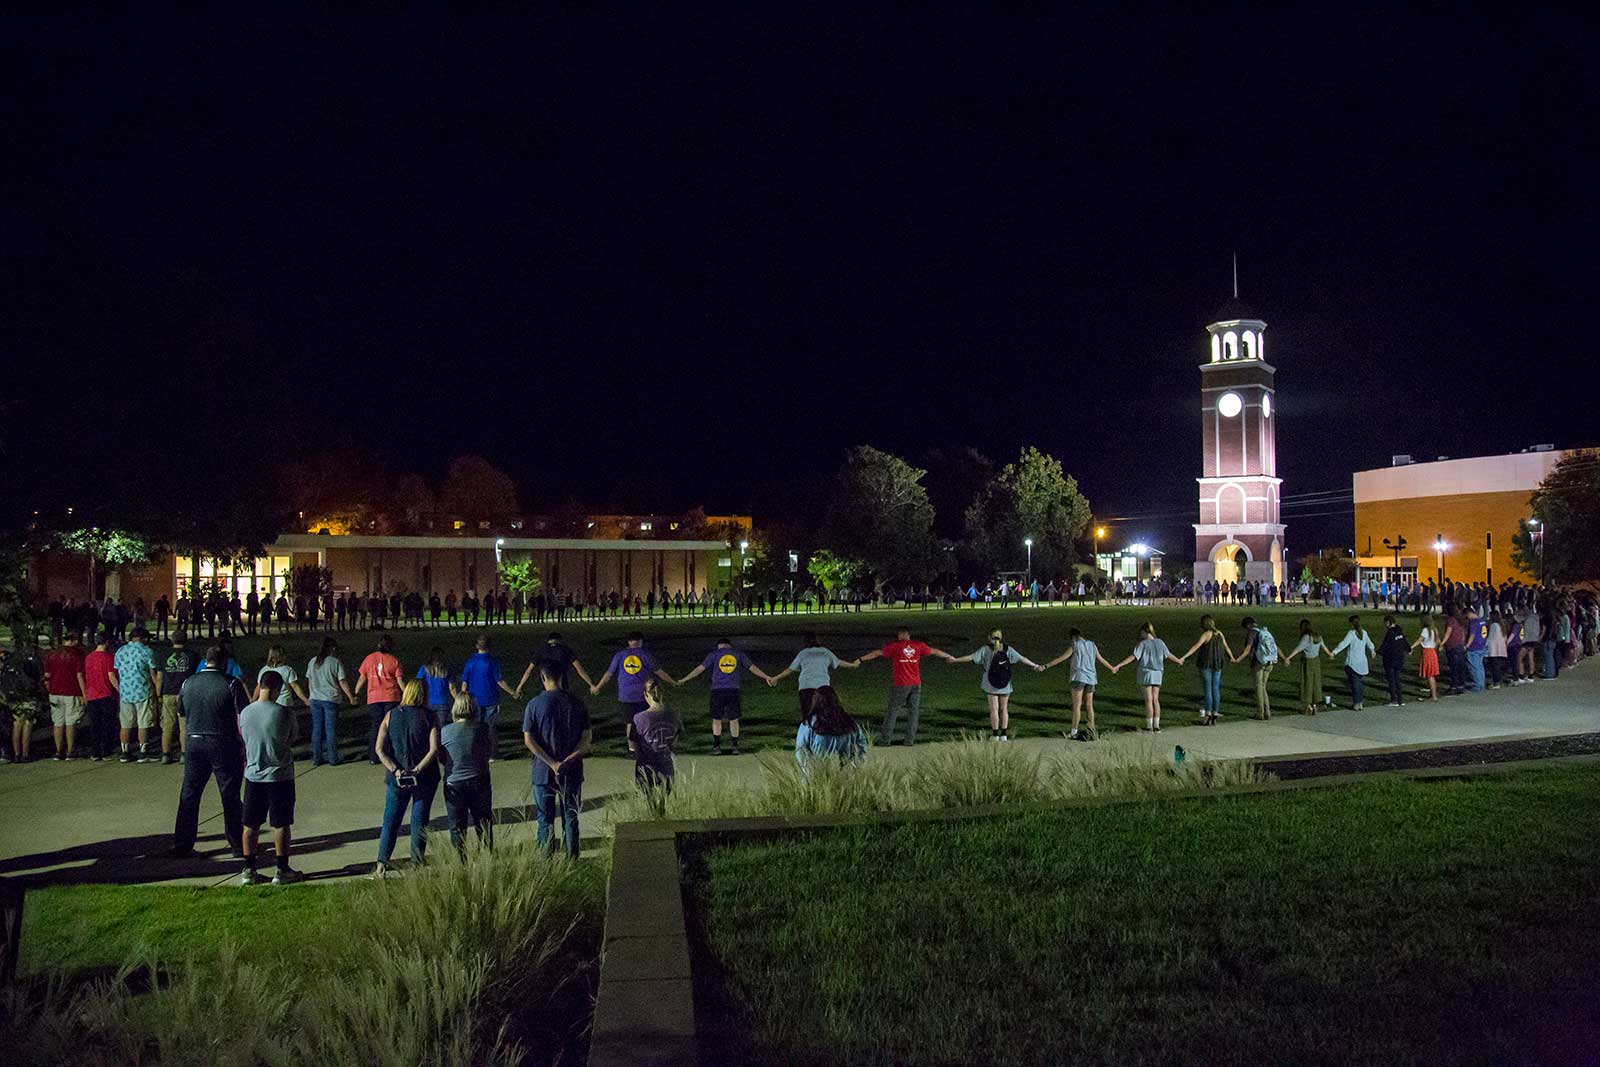 new - large student prayer around clock tower at night